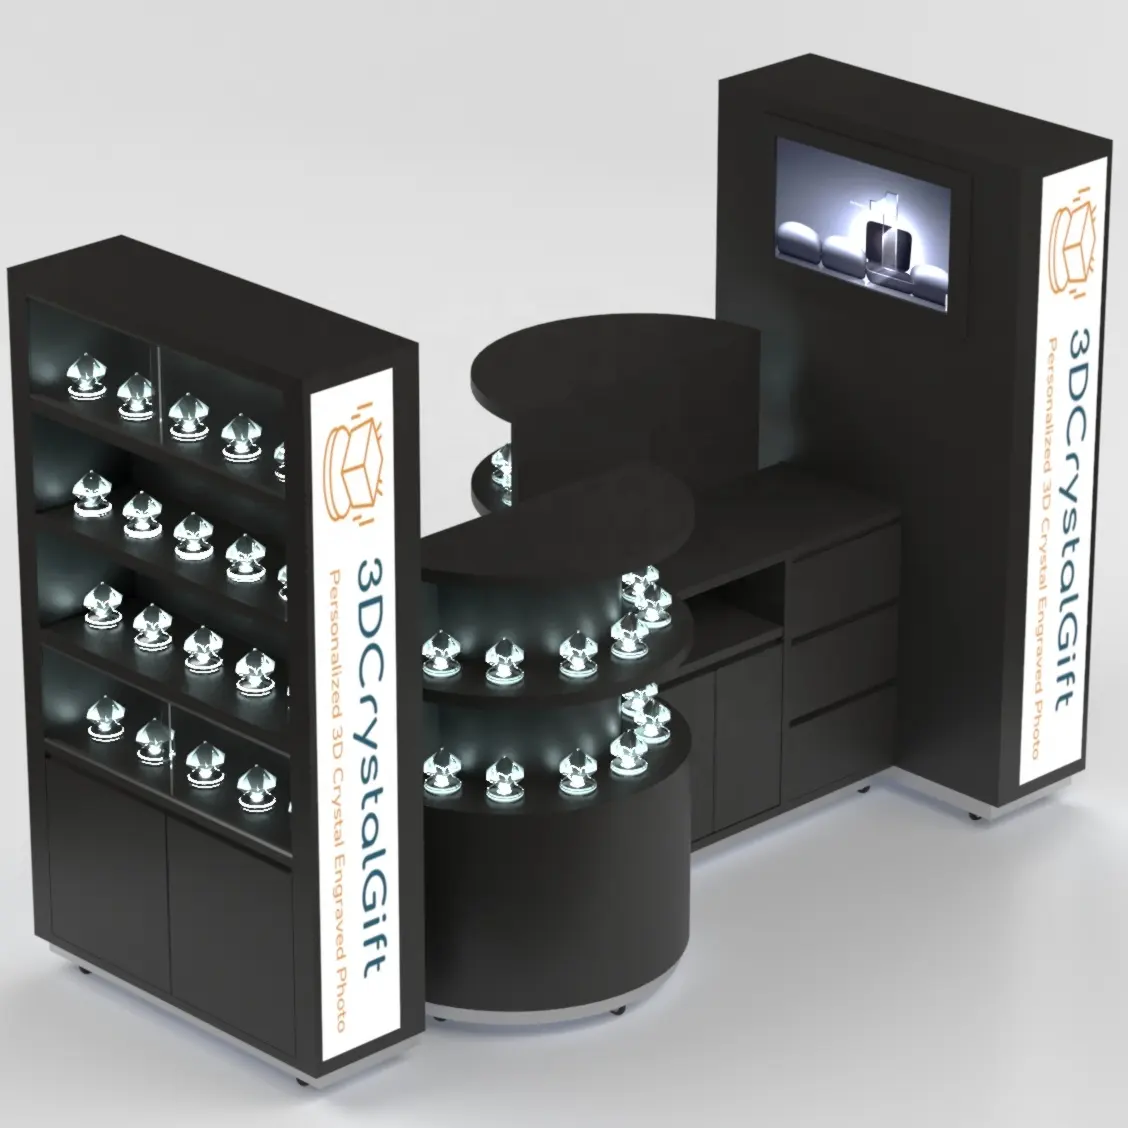 3Dイノベーション製品ディスプレイ用の素晴らしいカスタマイズショッピングモールクリスタルキオスクデザイン